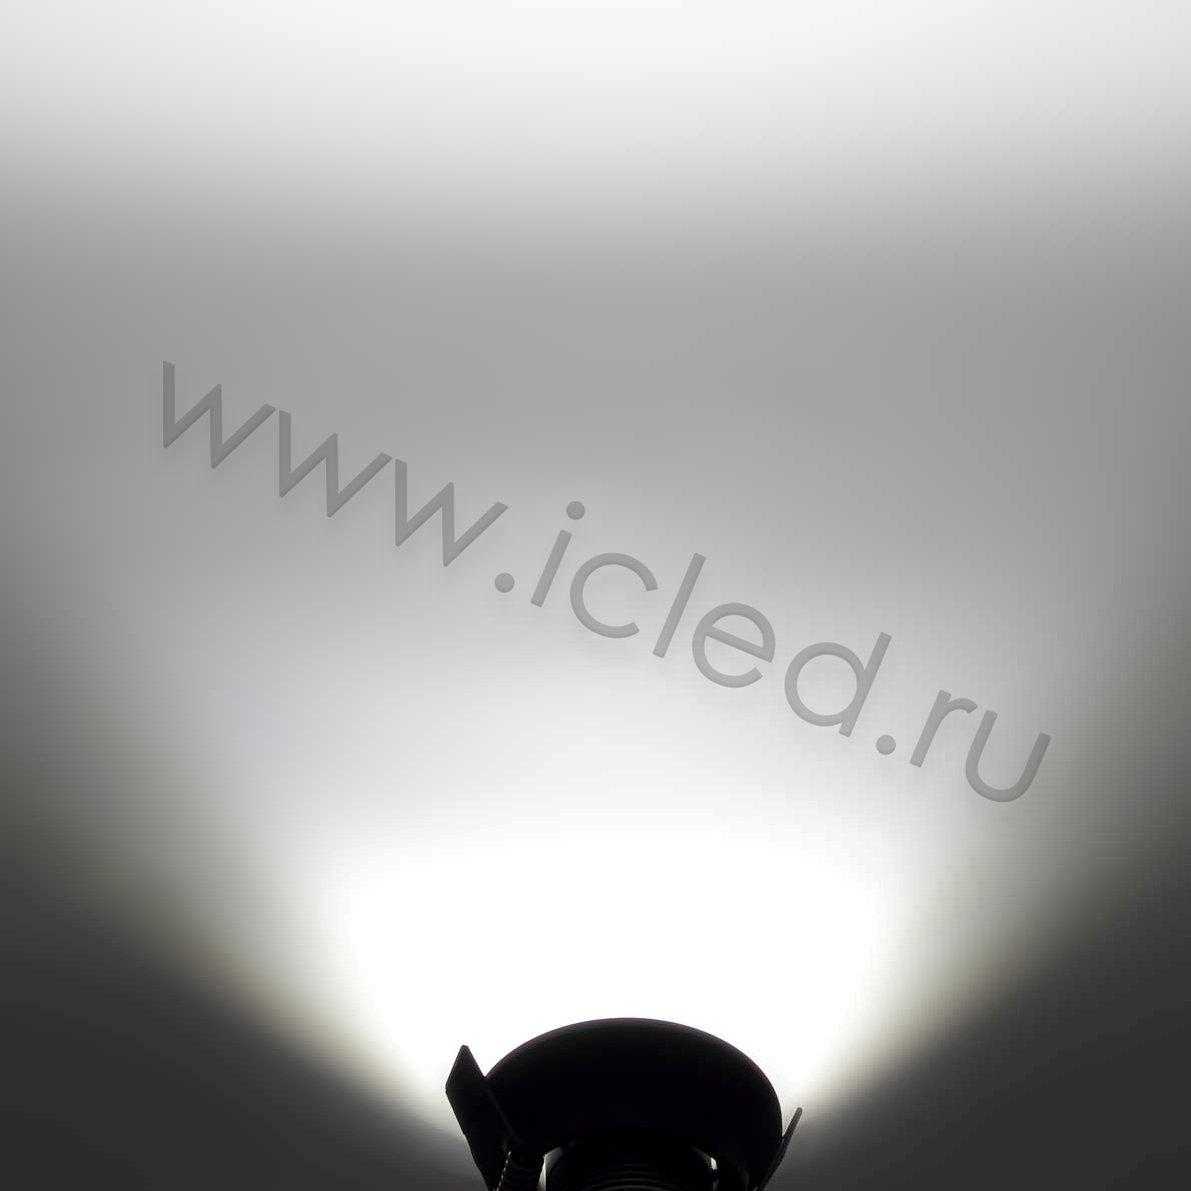 Светодиодные светильники Светодиодный светильник встраиваемый 65 Series black housing BW202 (3W,220V,day white)